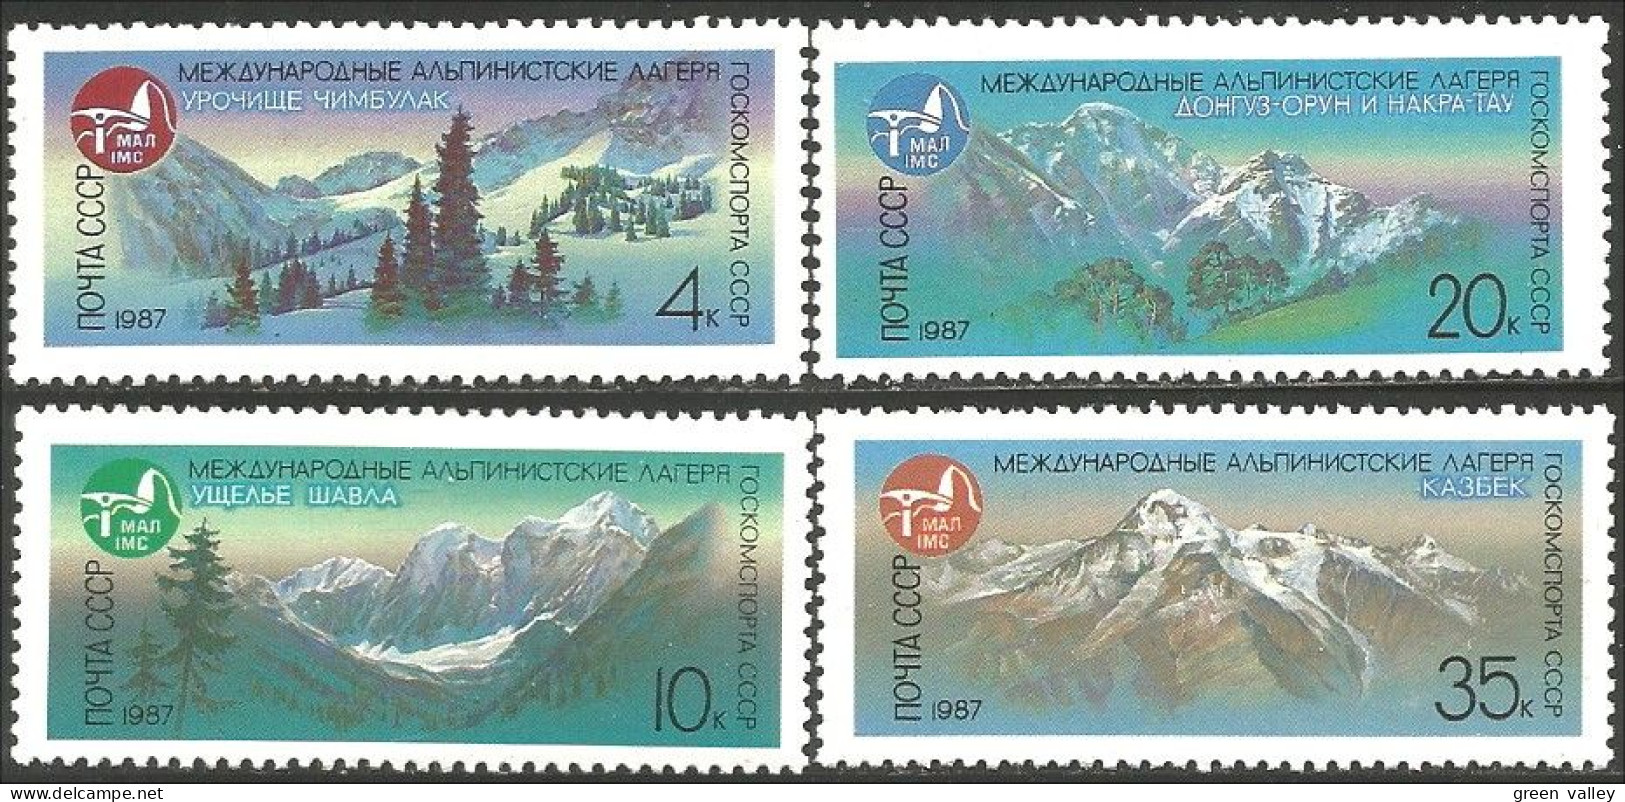 772 Russie 1986 Alpinisme Escalade Mountain Climbing MNH ** Neuf SC (RUC-388b) - Escalade